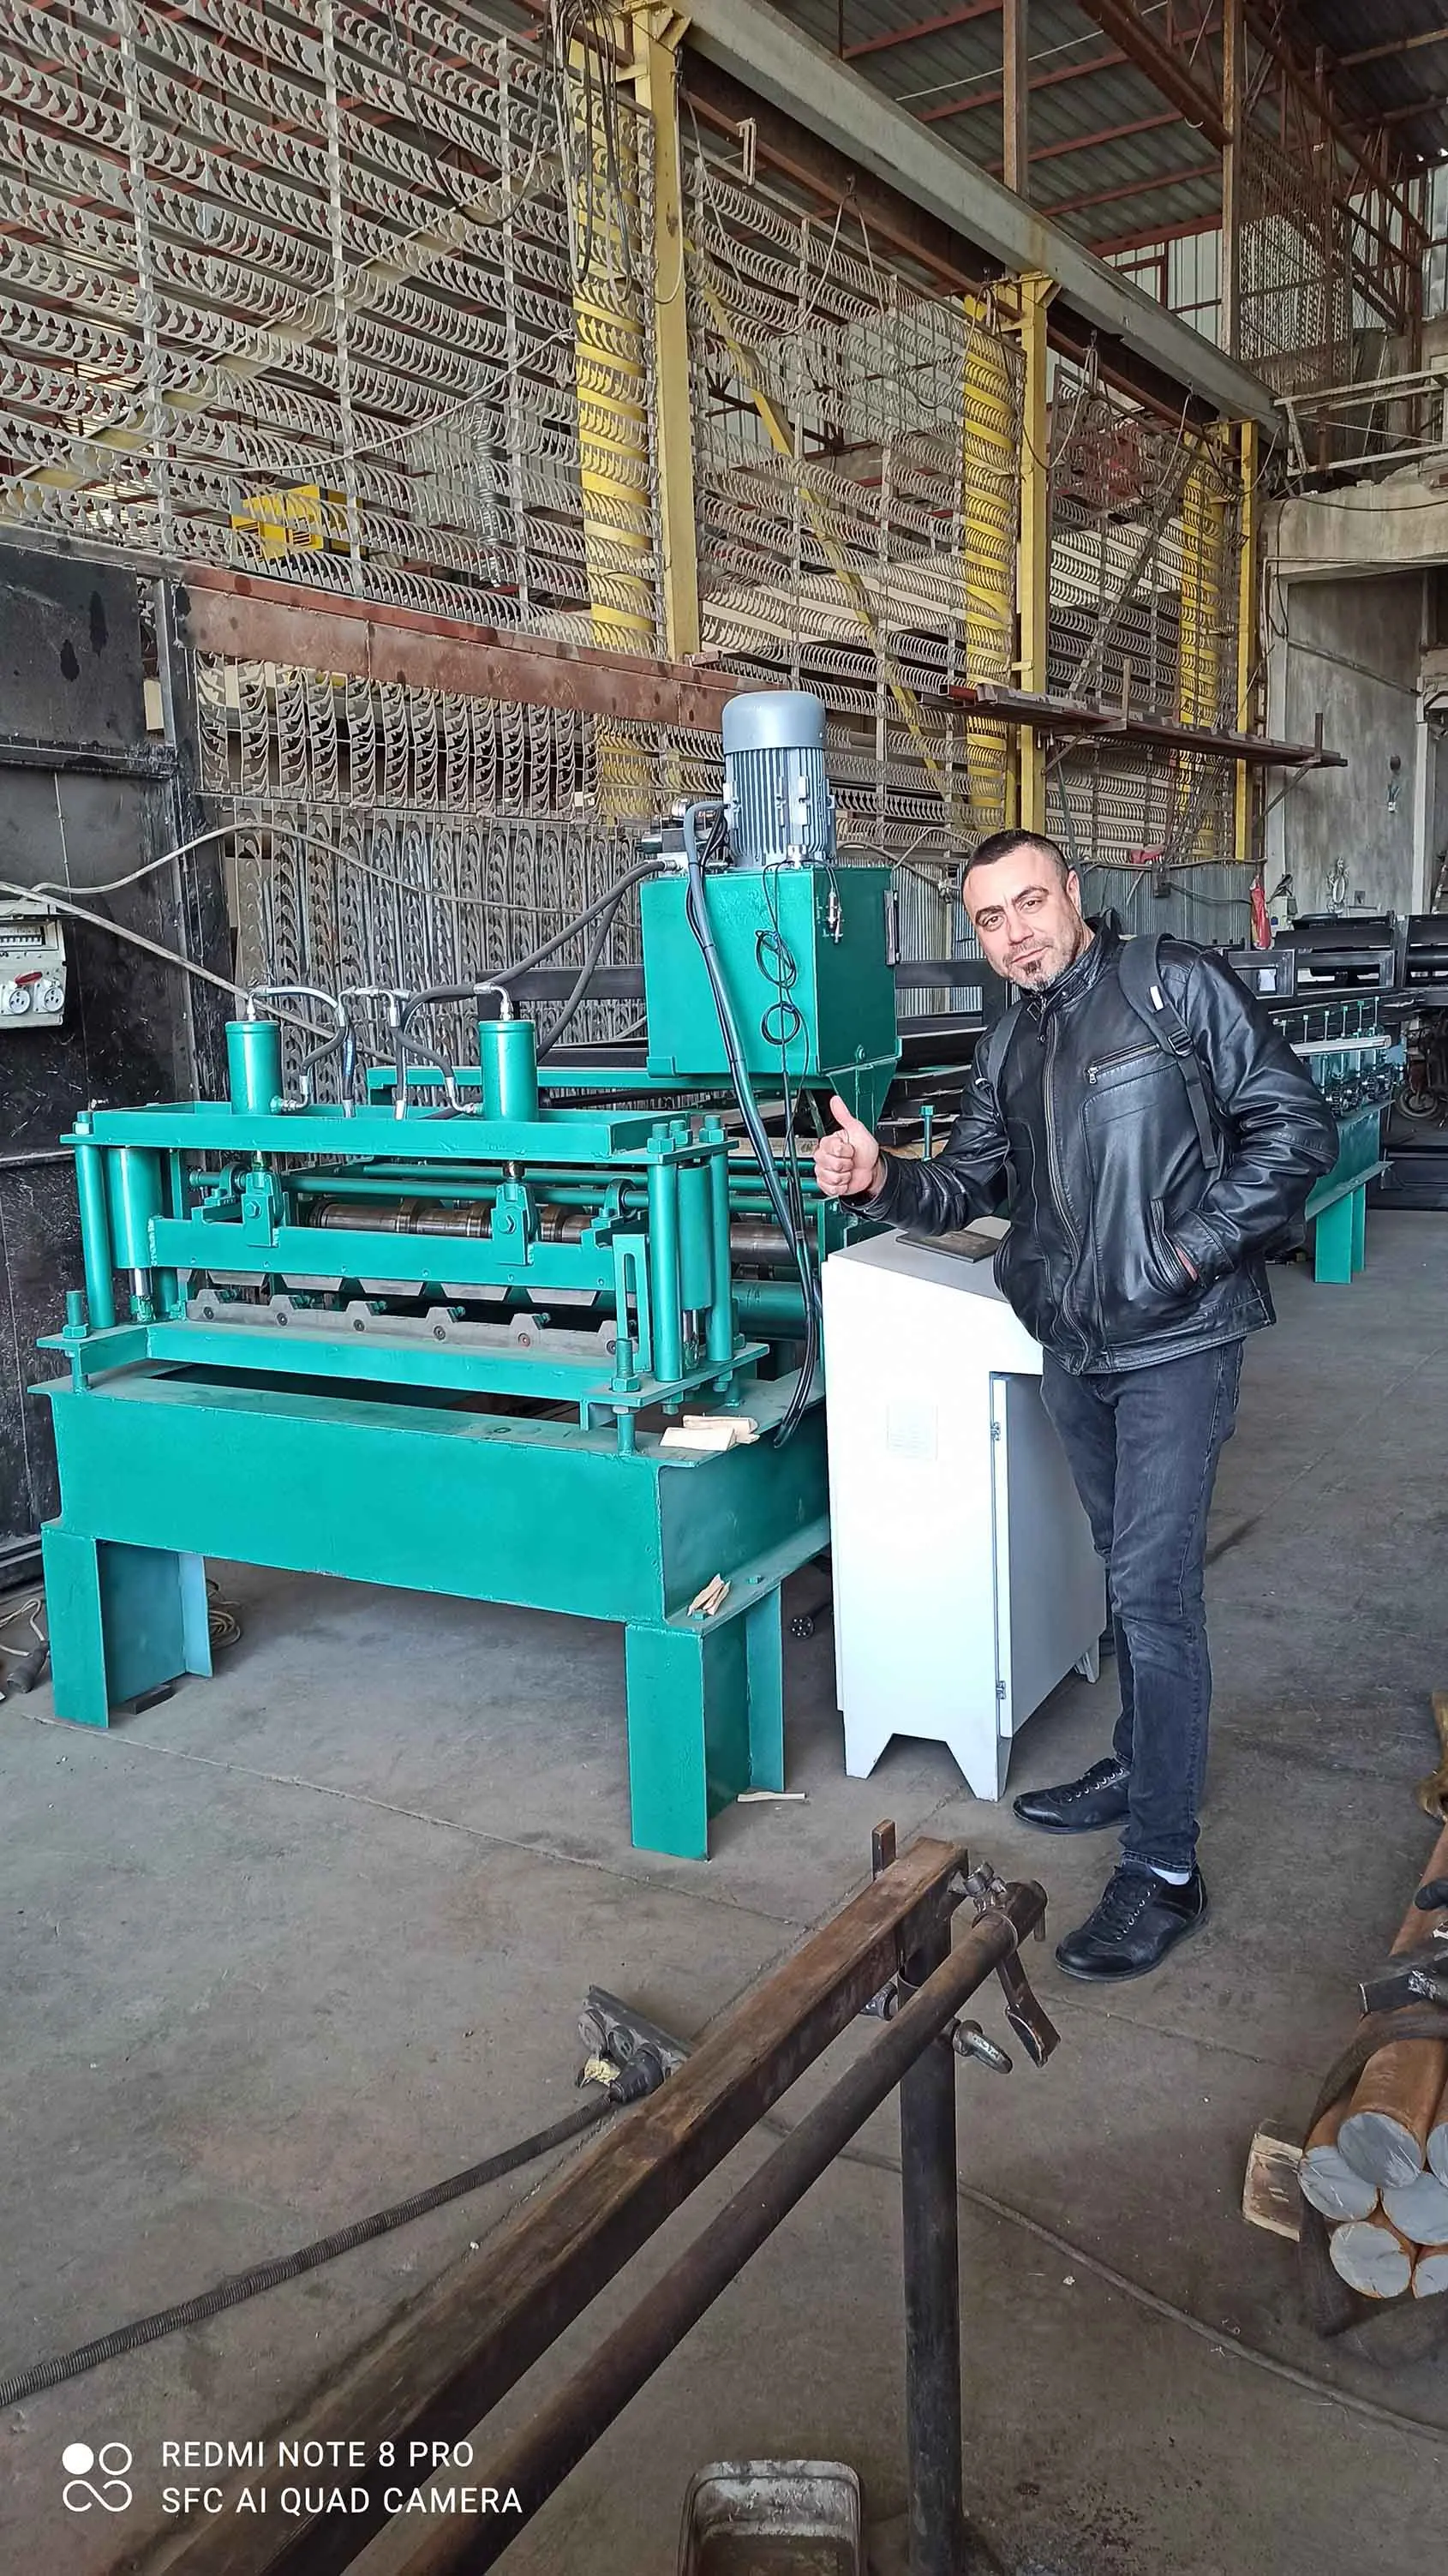 img/urunler/trapez/soner faruk cengiz and trapezoidal sheet metal manufacturing machine.webp